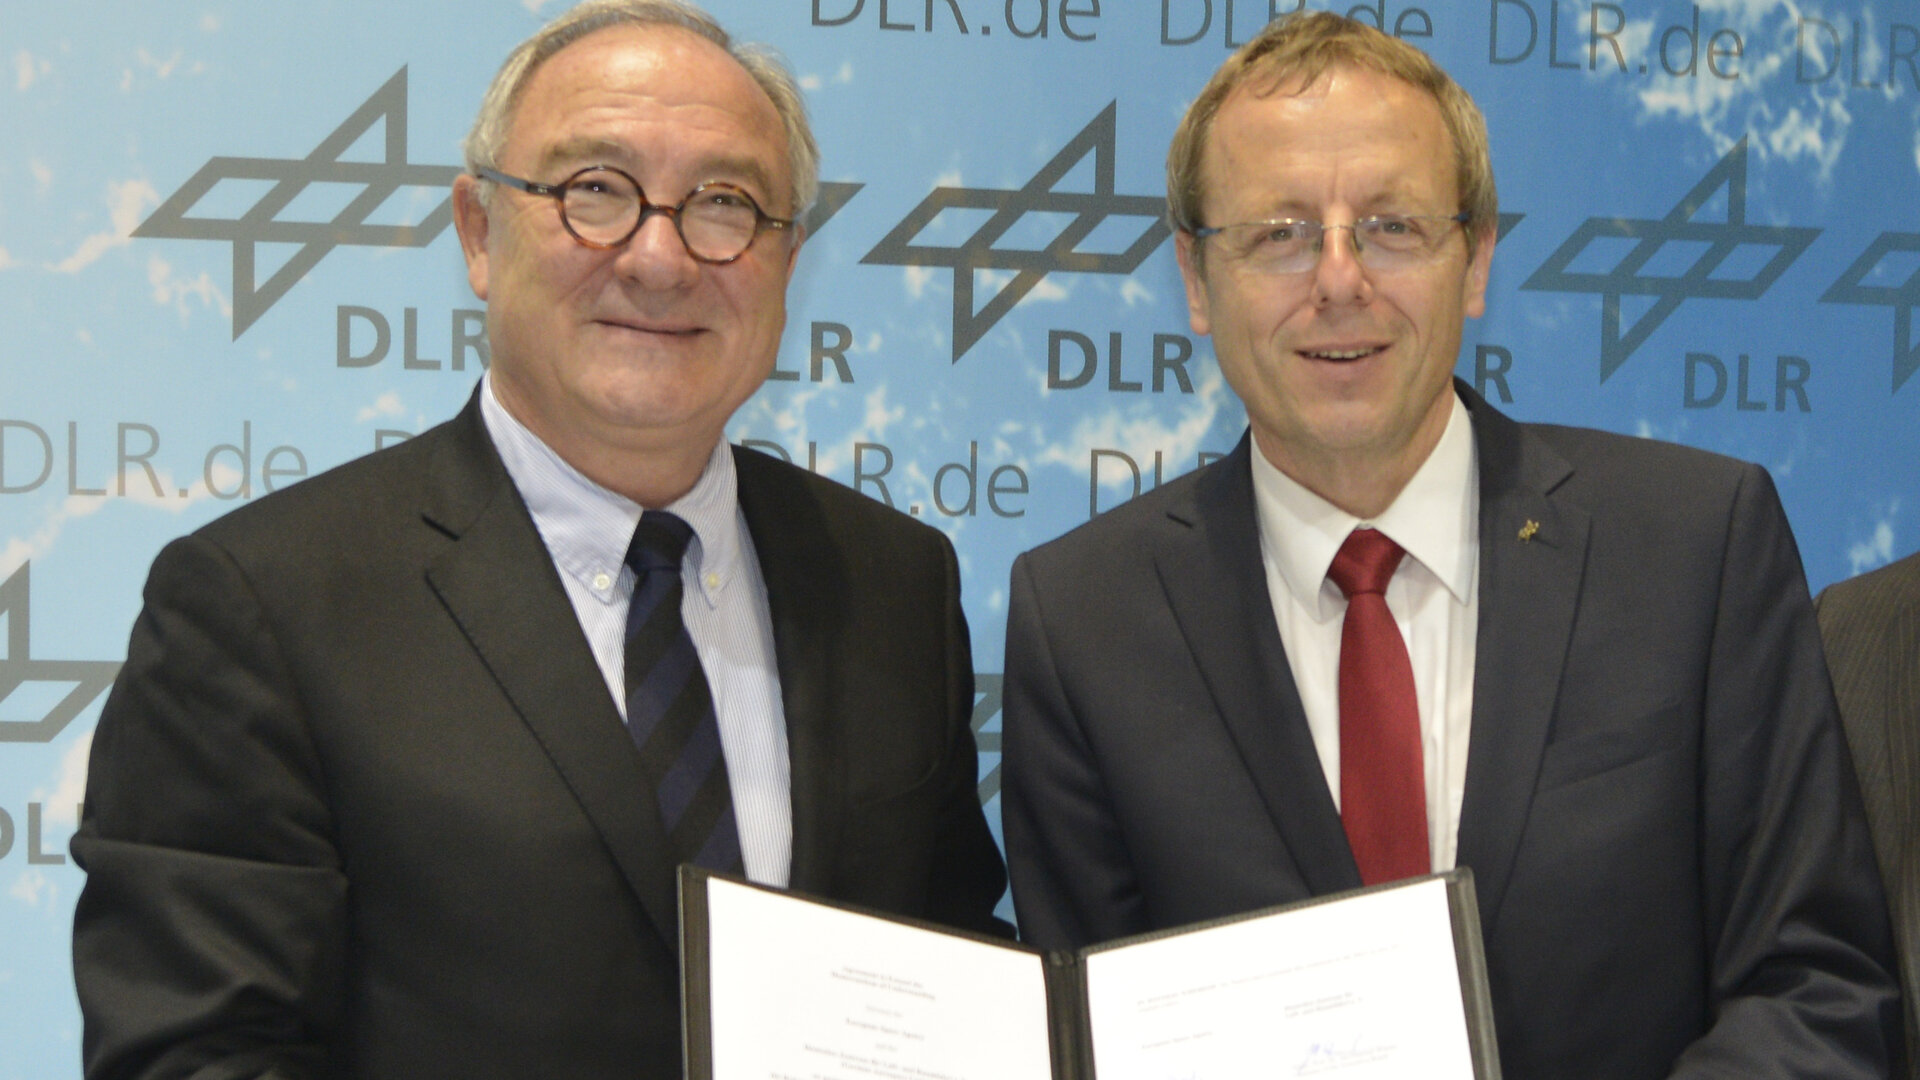 Auf der ILA Berlin Air Show haben DLR-Vorstandsvorsitzender Prof. Johann-Dietrich Wörner und ESA-Generaldirektor Prof. Jean-Jacques Dordain ein seit Juni 2010 bestehendes "MoU"  bis Ende 2016 verlängert.